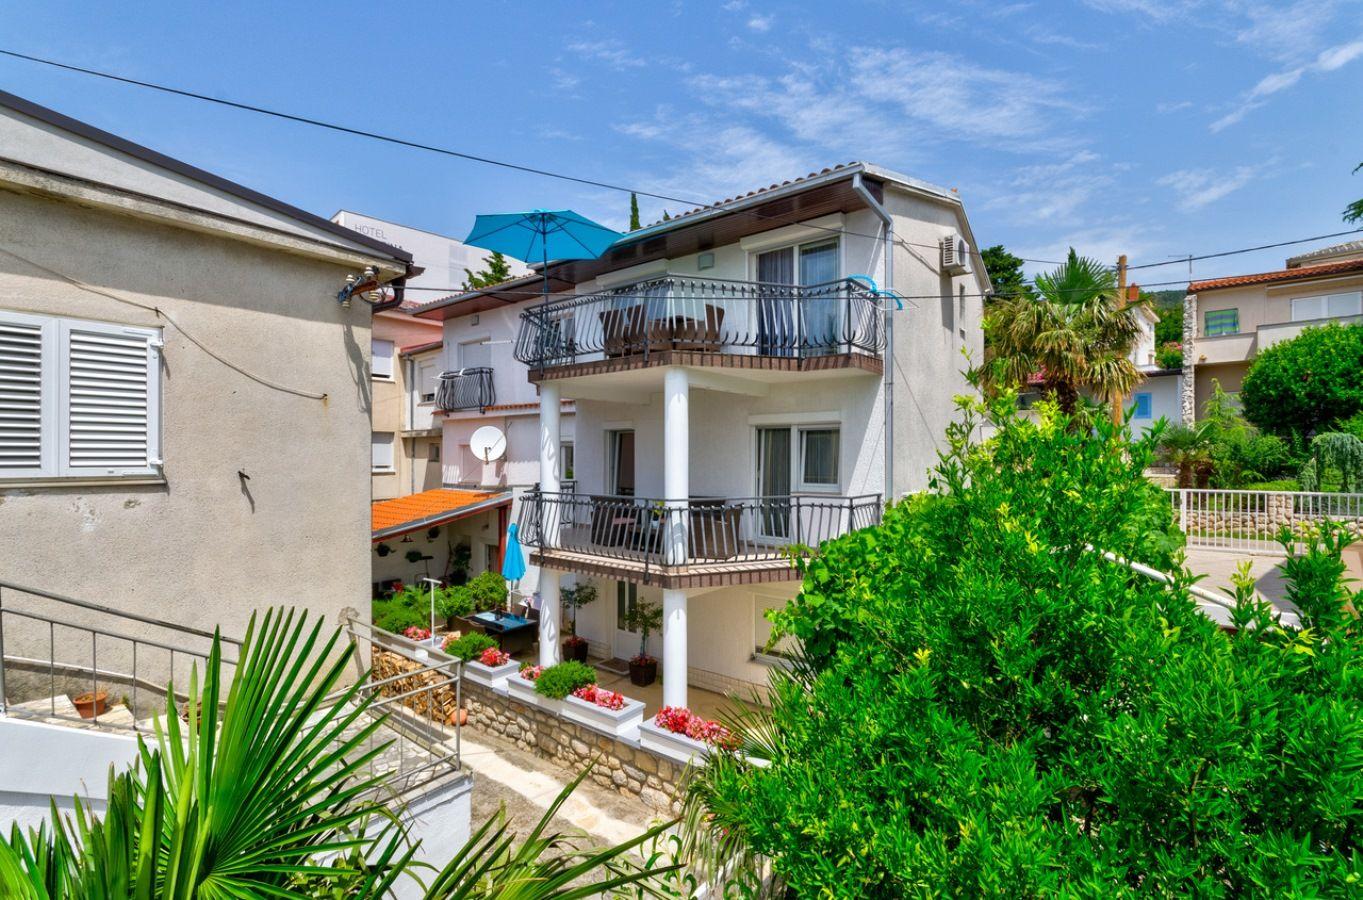 Ferienwohnung mit zwei Balkonen und Meerblick  in Kroatien